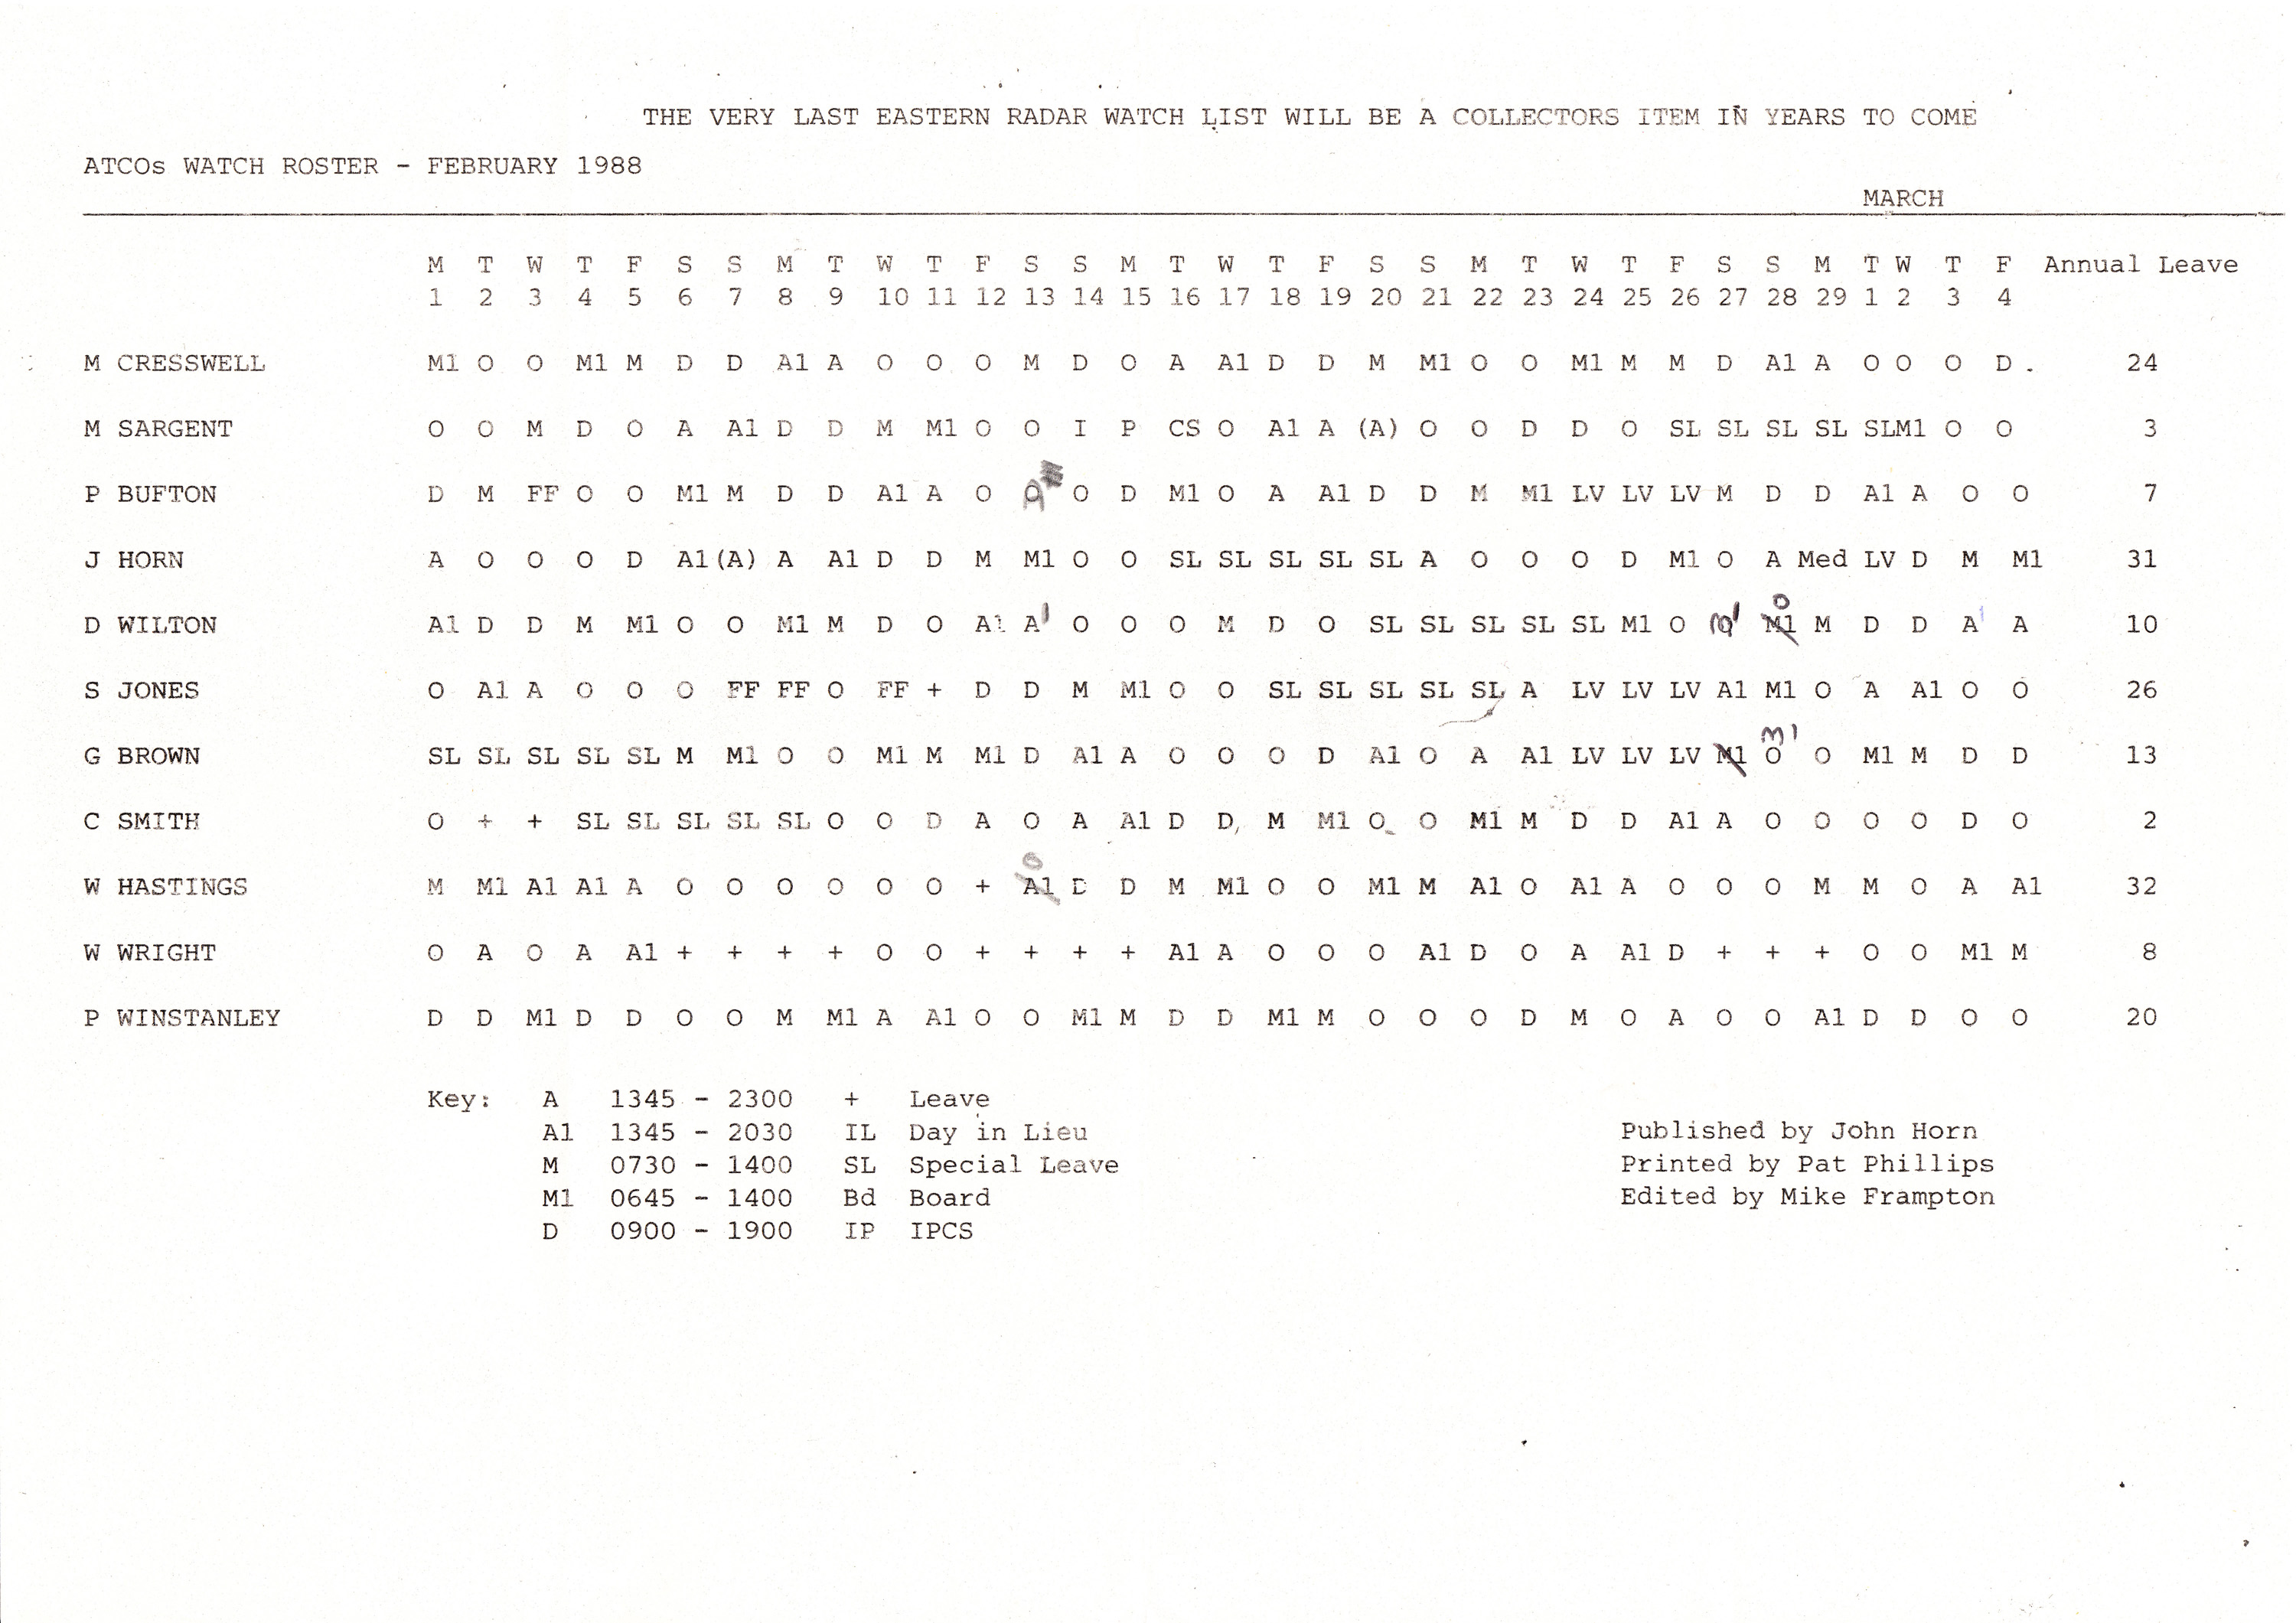 1988 FebMar, Eastern final ATCO watchlist Copy